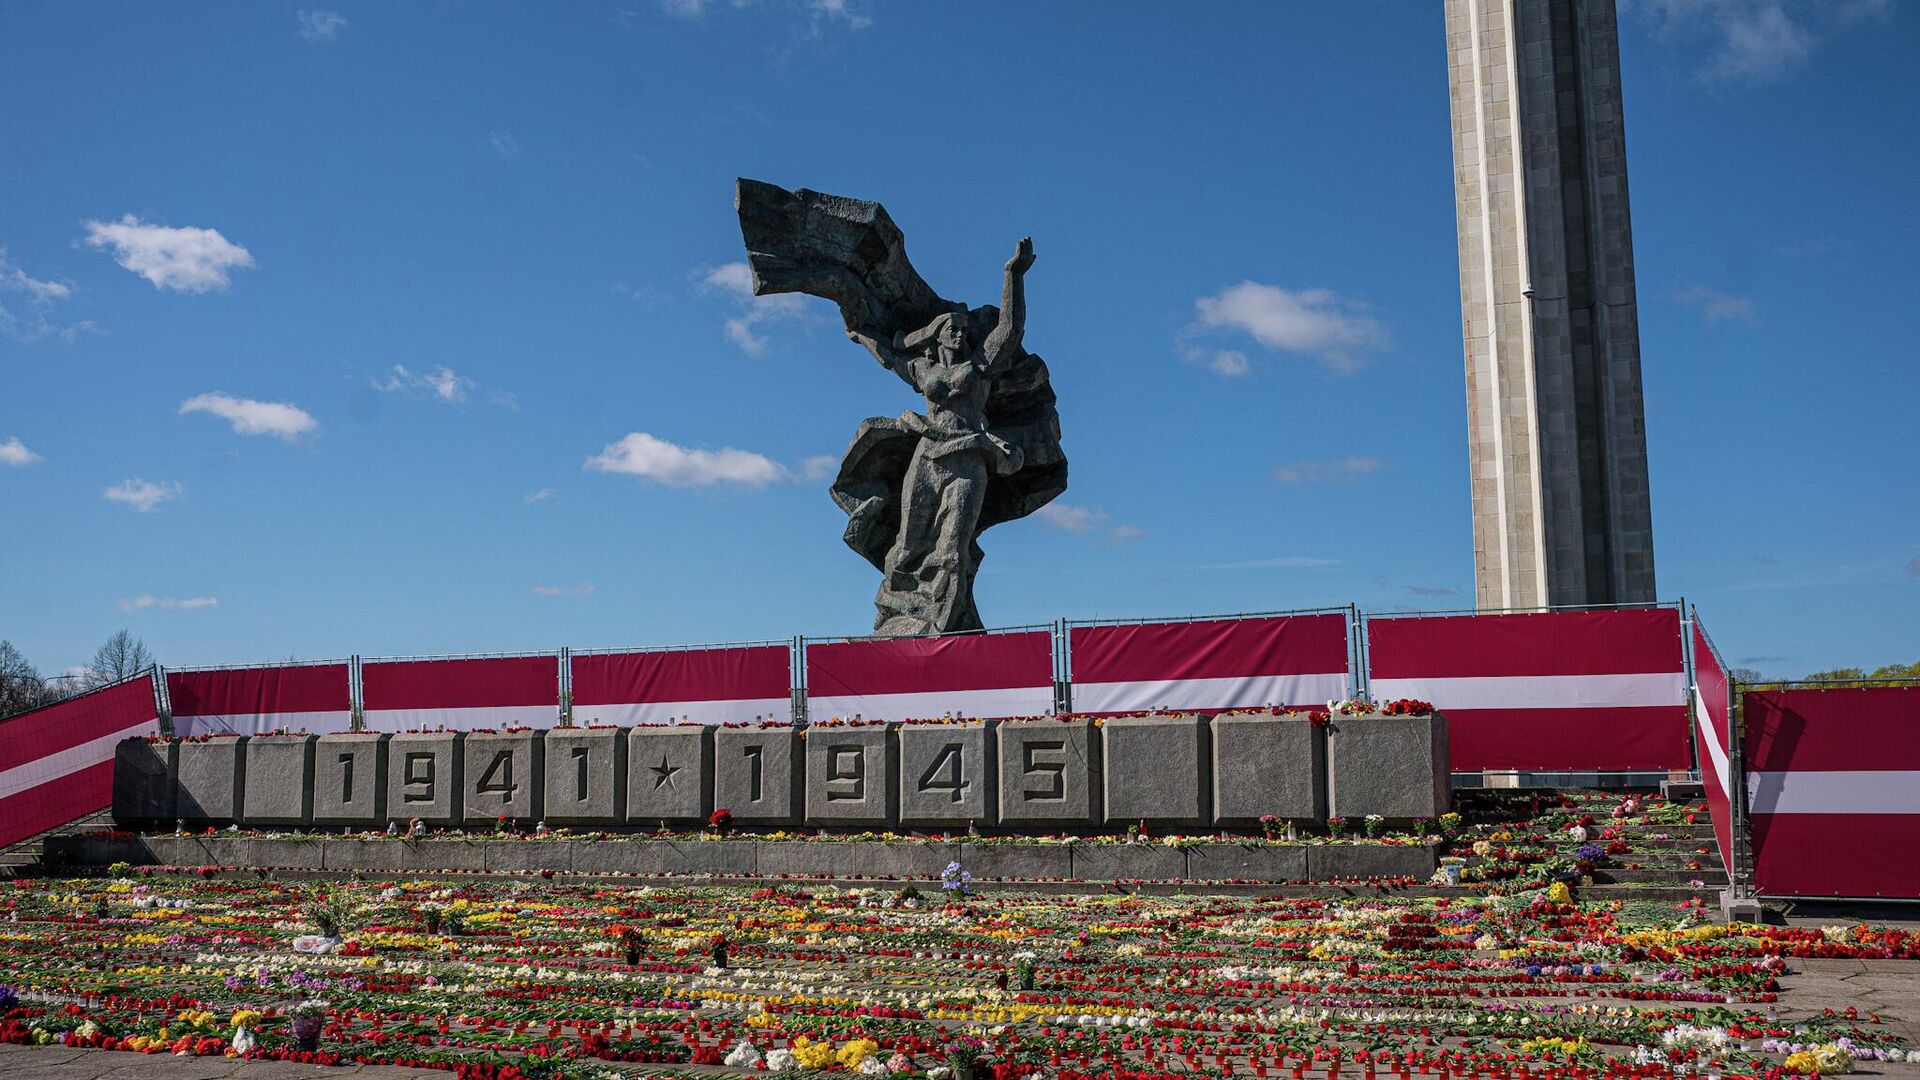 Обстановка у памятника Освободителям в Риге 9 Мая 2022 года - Sputnik Латвия, 1920, 10.05.2022